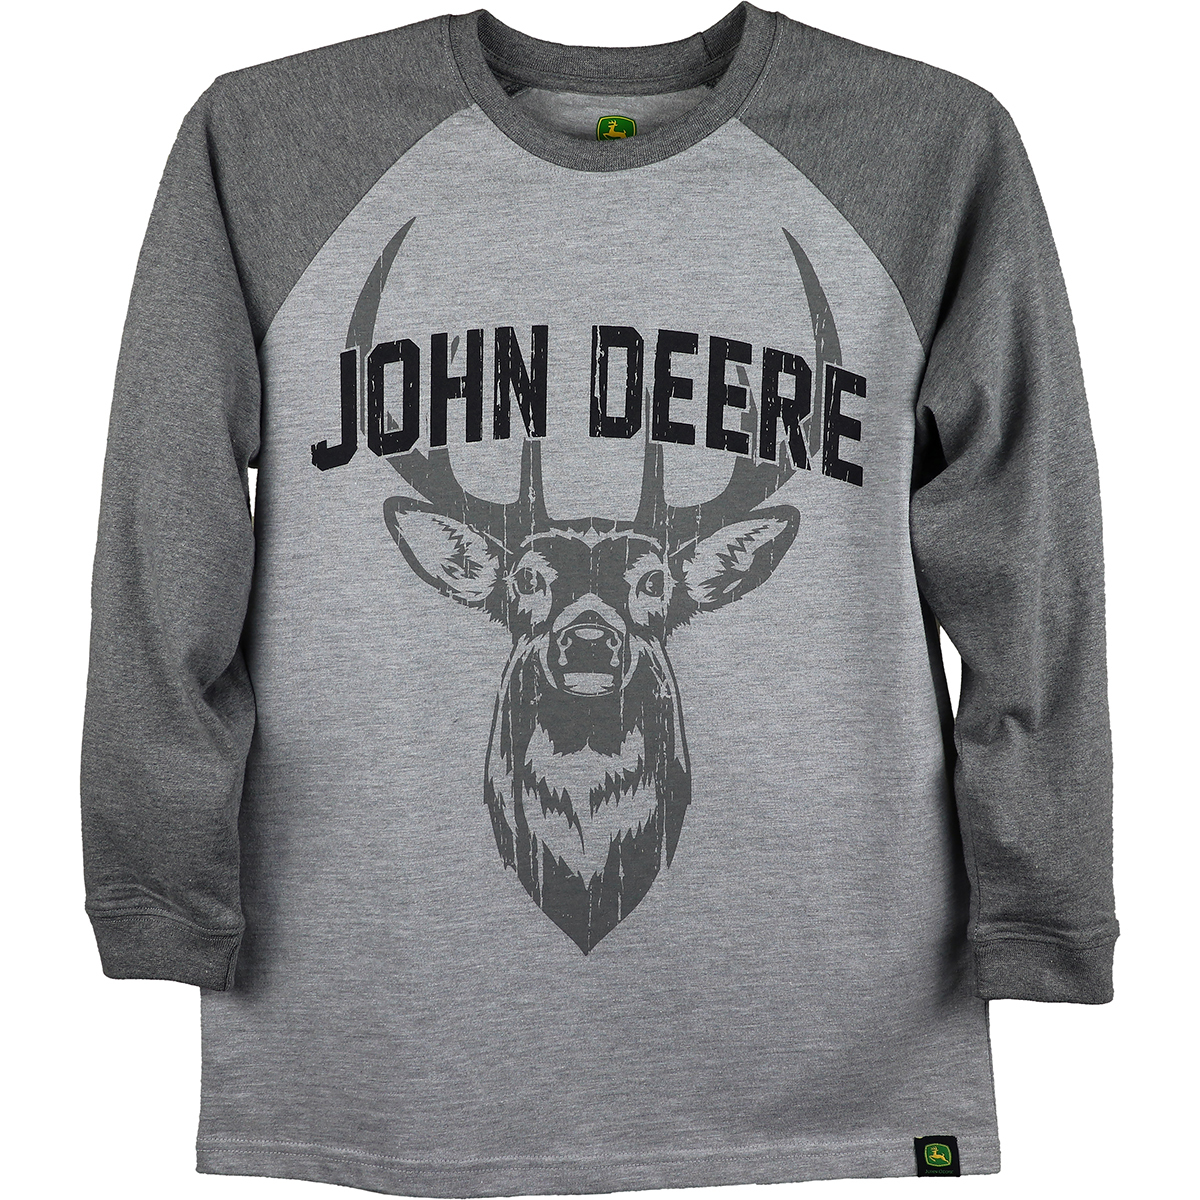 14/16 NEW Green L/S John Deere BoysT-Shirt Deer Buck Size 10/12 